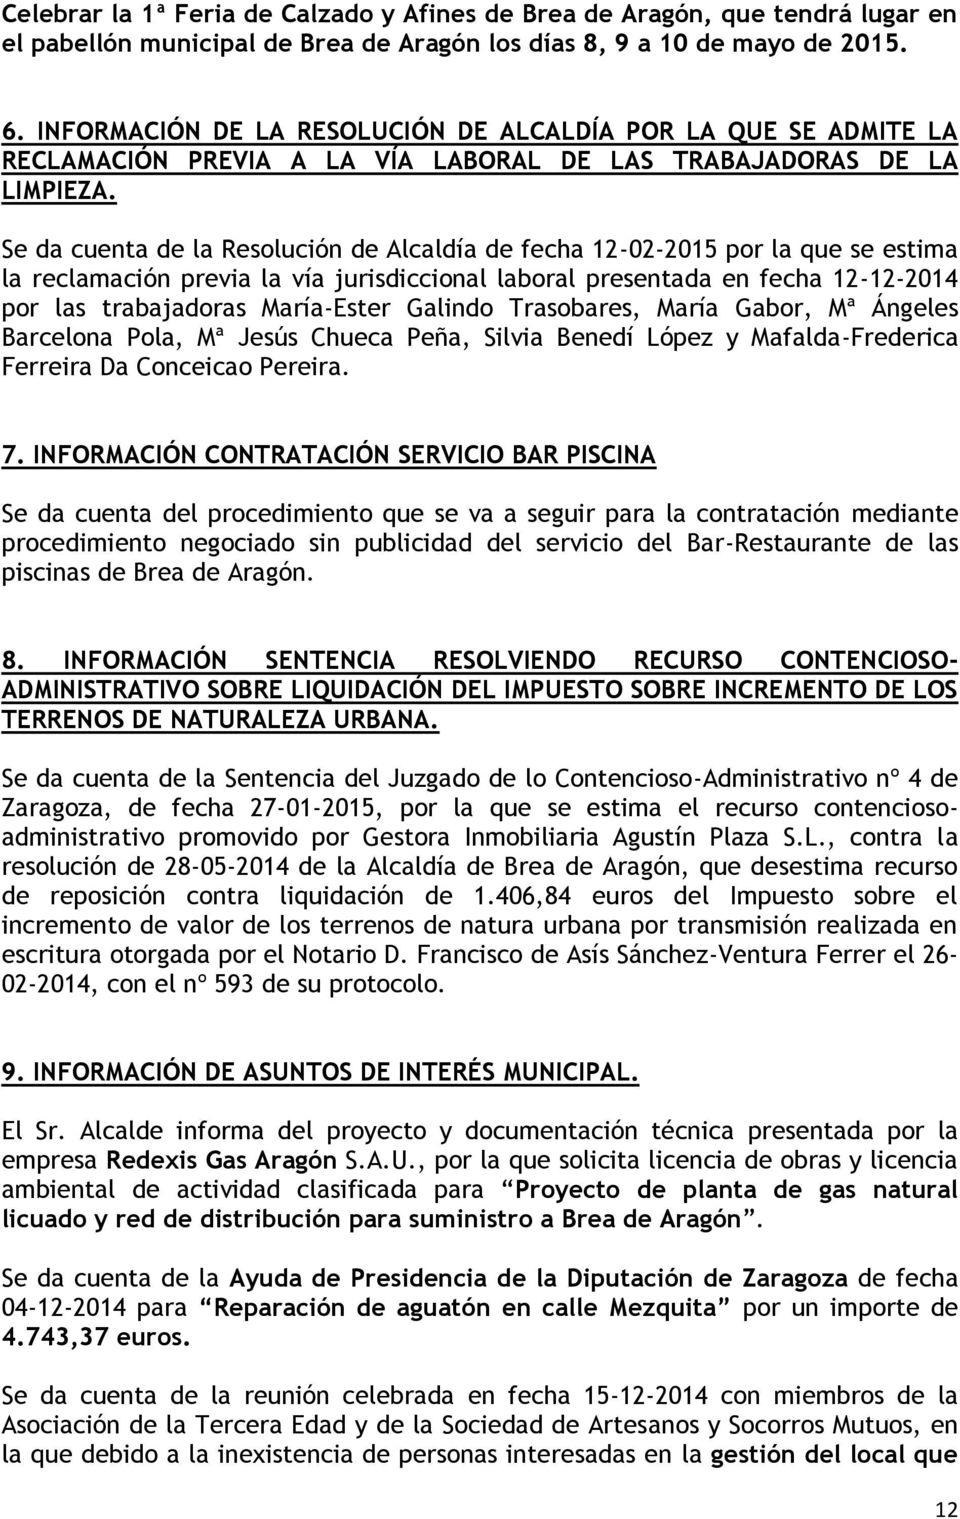 Se da cuenta de la Resolución de Alcaldía de fecha 12-02-2015 por la que se estima la reclamación previa la vía jurisdiccional laboral presentada en fecha 12-12-2014 por las trabajadoras María-Ester